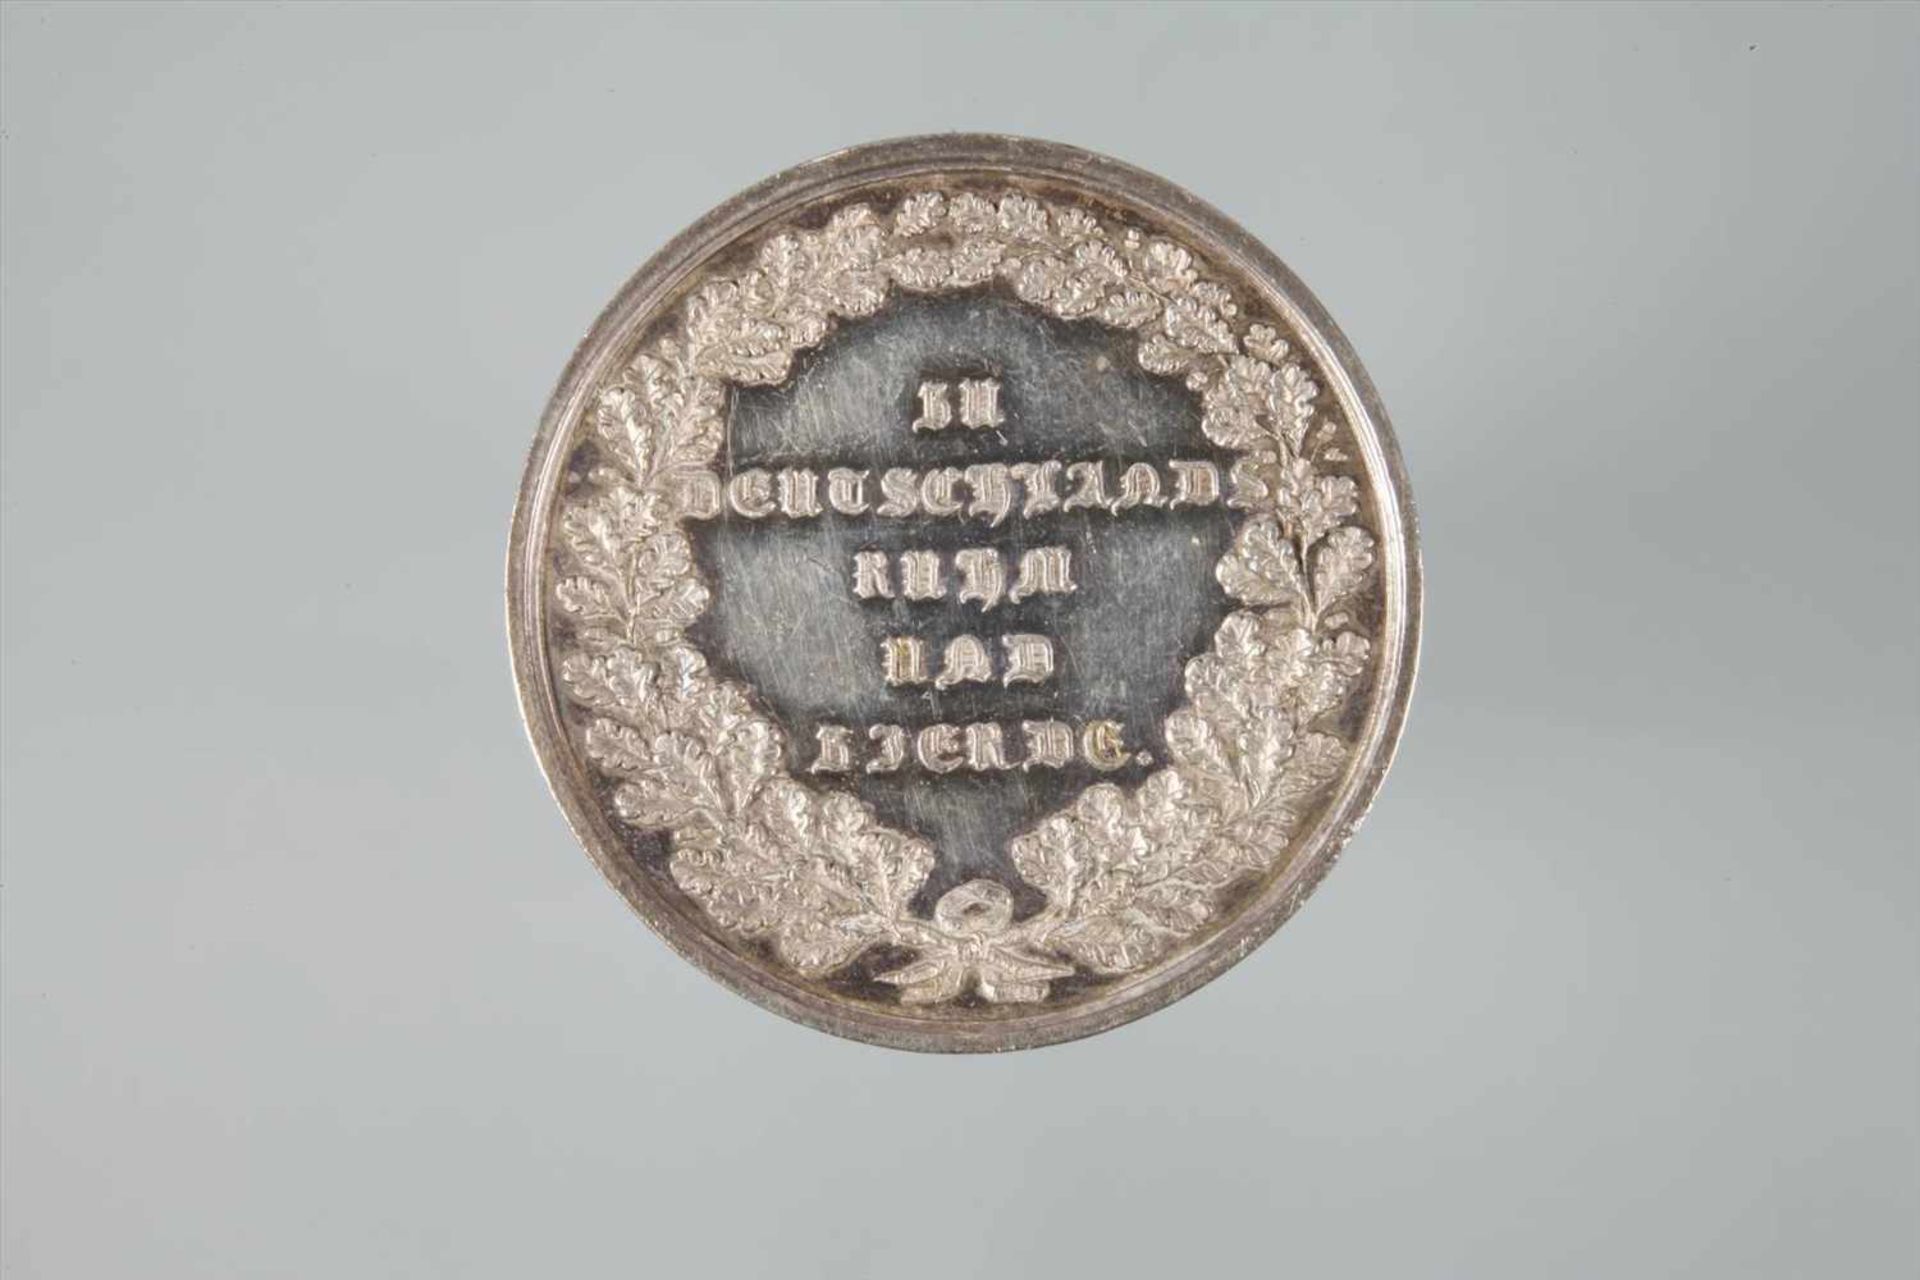 Medaille Walhalla1842, I. I. Neuss dir., "Zu Deutschlands Ruhm und Zierde", Silber, fast vz mit - Bild 2 aus 3